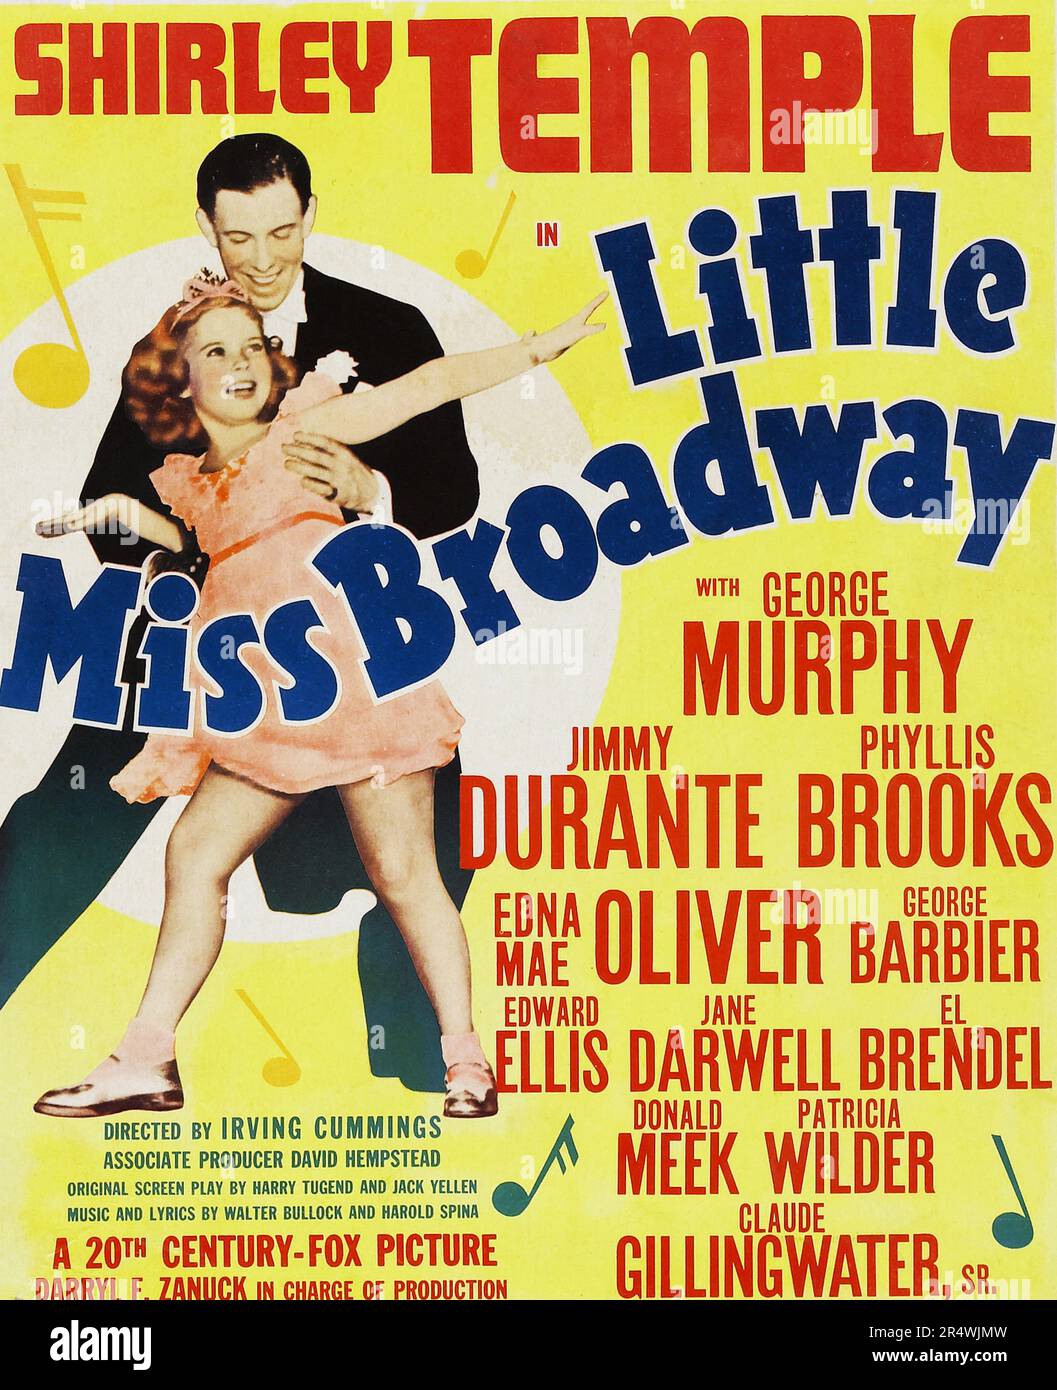 Little Miss Broadway è un 1938 American film musicale diretto da Irving Cummings. La sceneggiatura è stata scritta da Harry Tugend e Jack Yellen. La star di film Shirley Temple in una storia su una scena teatrale boarding House e i suoi occupanti, ed era originariamente intitolato piccola signora di Broadway. Foto Stock